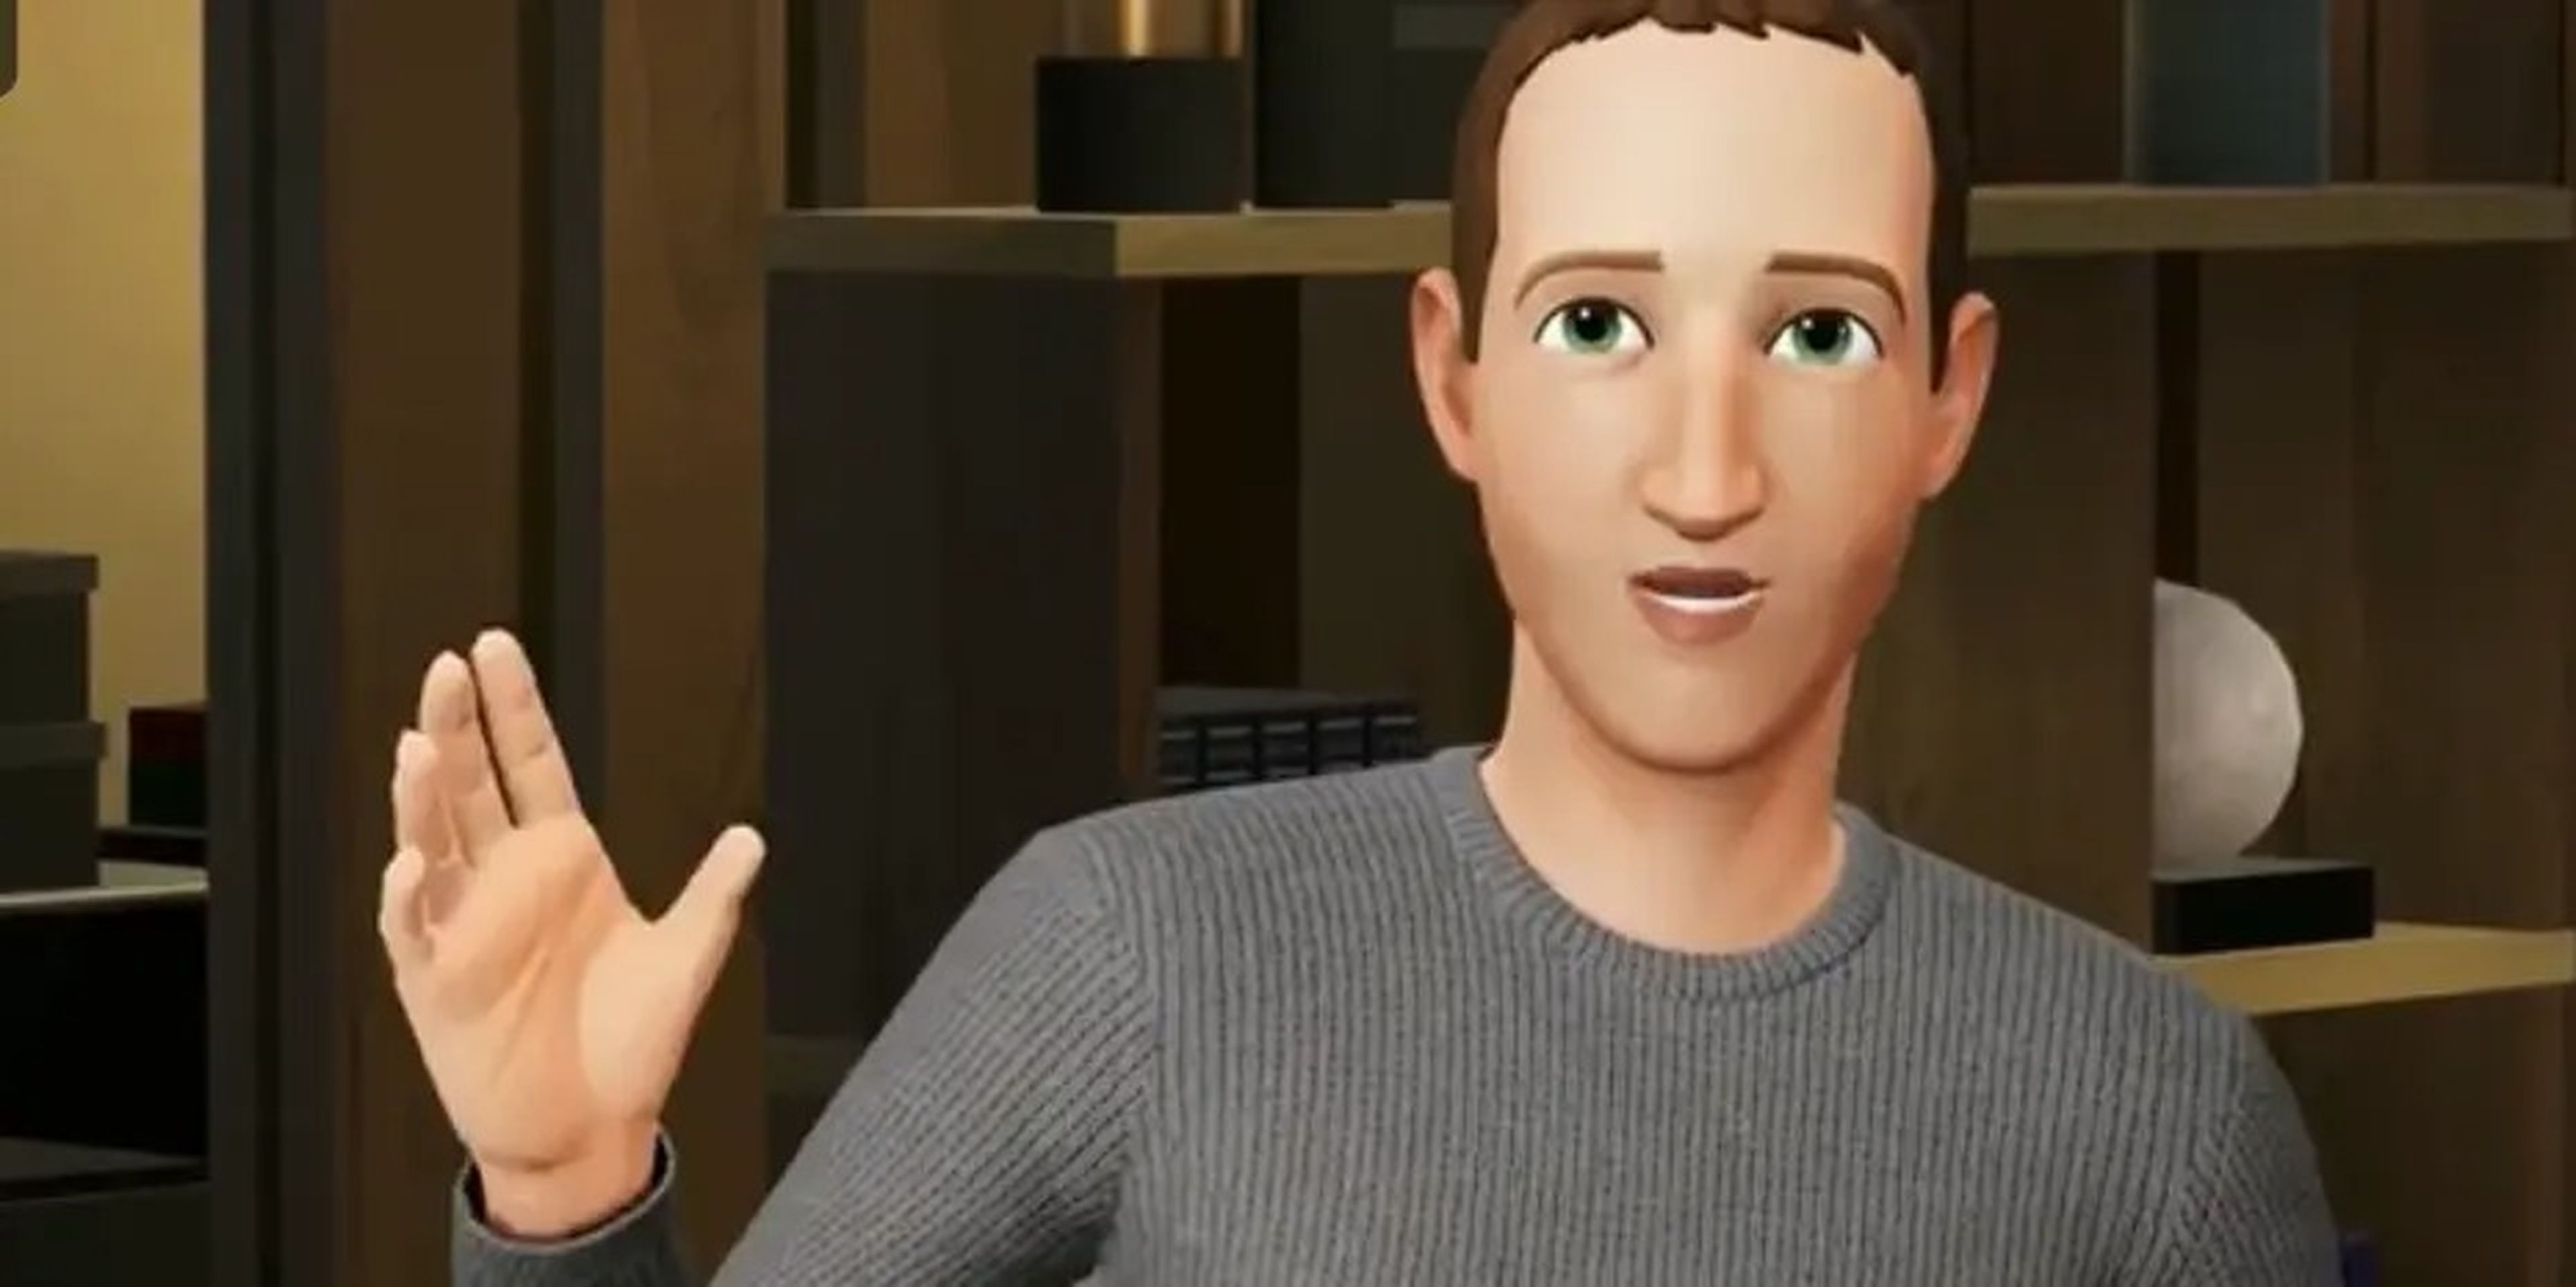 El avatar de Mark Zuckerberg, CEO de Meta, durante una presentación del metaverso.